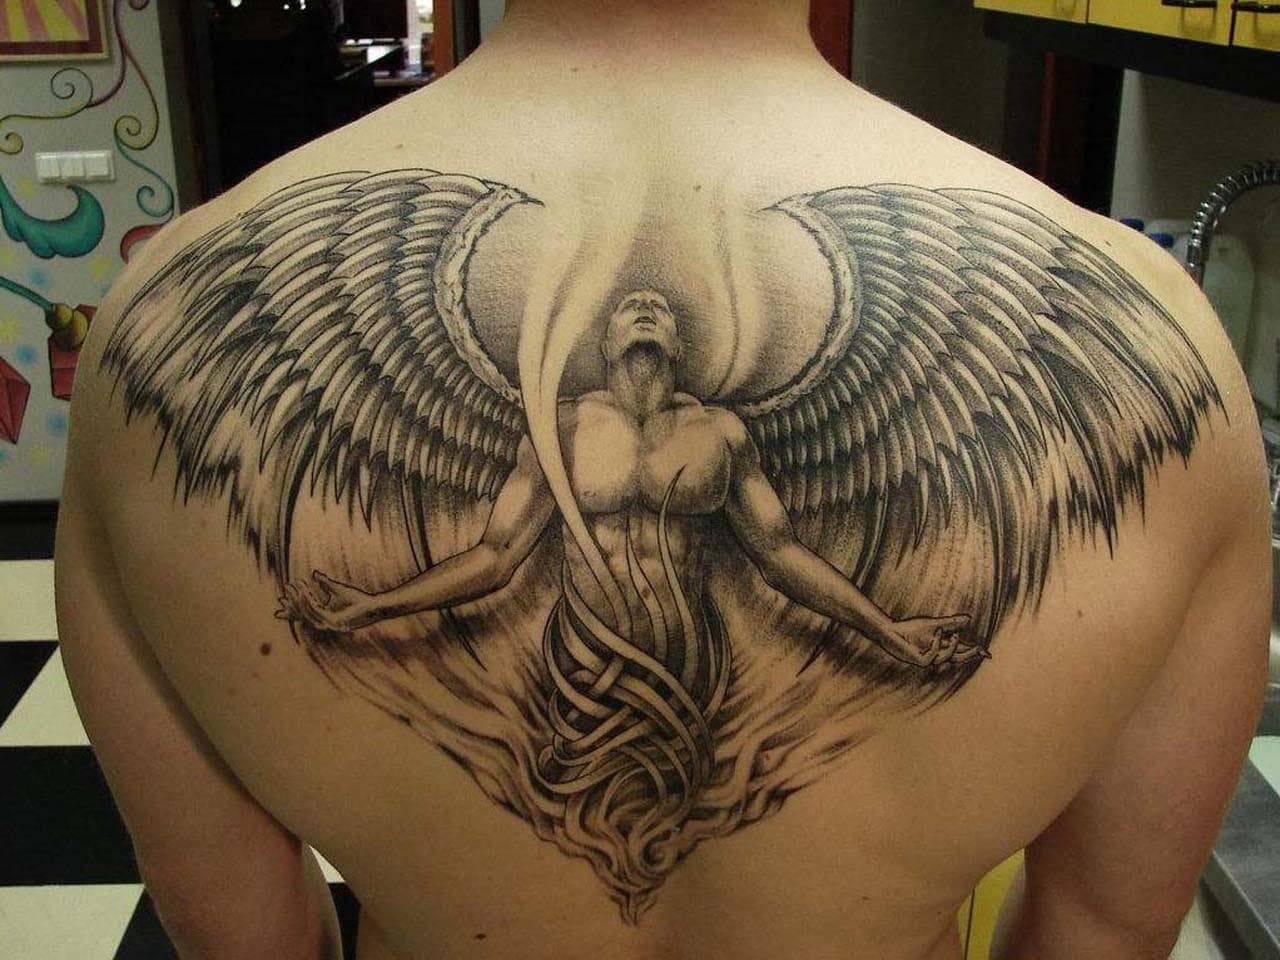 Татуировка ангел на спине - фото, значение, доступная цена в Москве